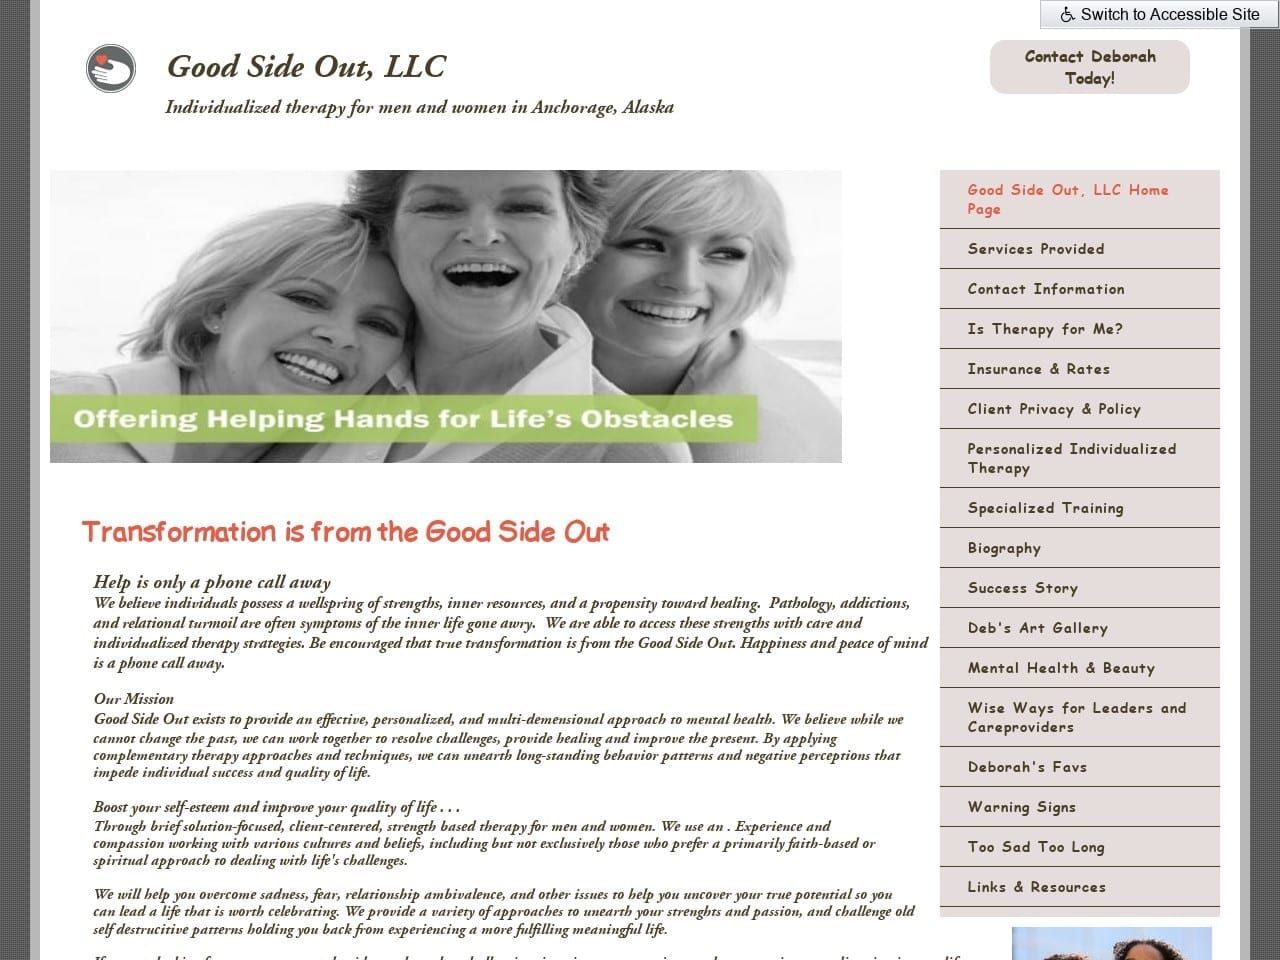 Deborah E. Stamm MS LPC CDC Website Screenshot from goodsideout.com